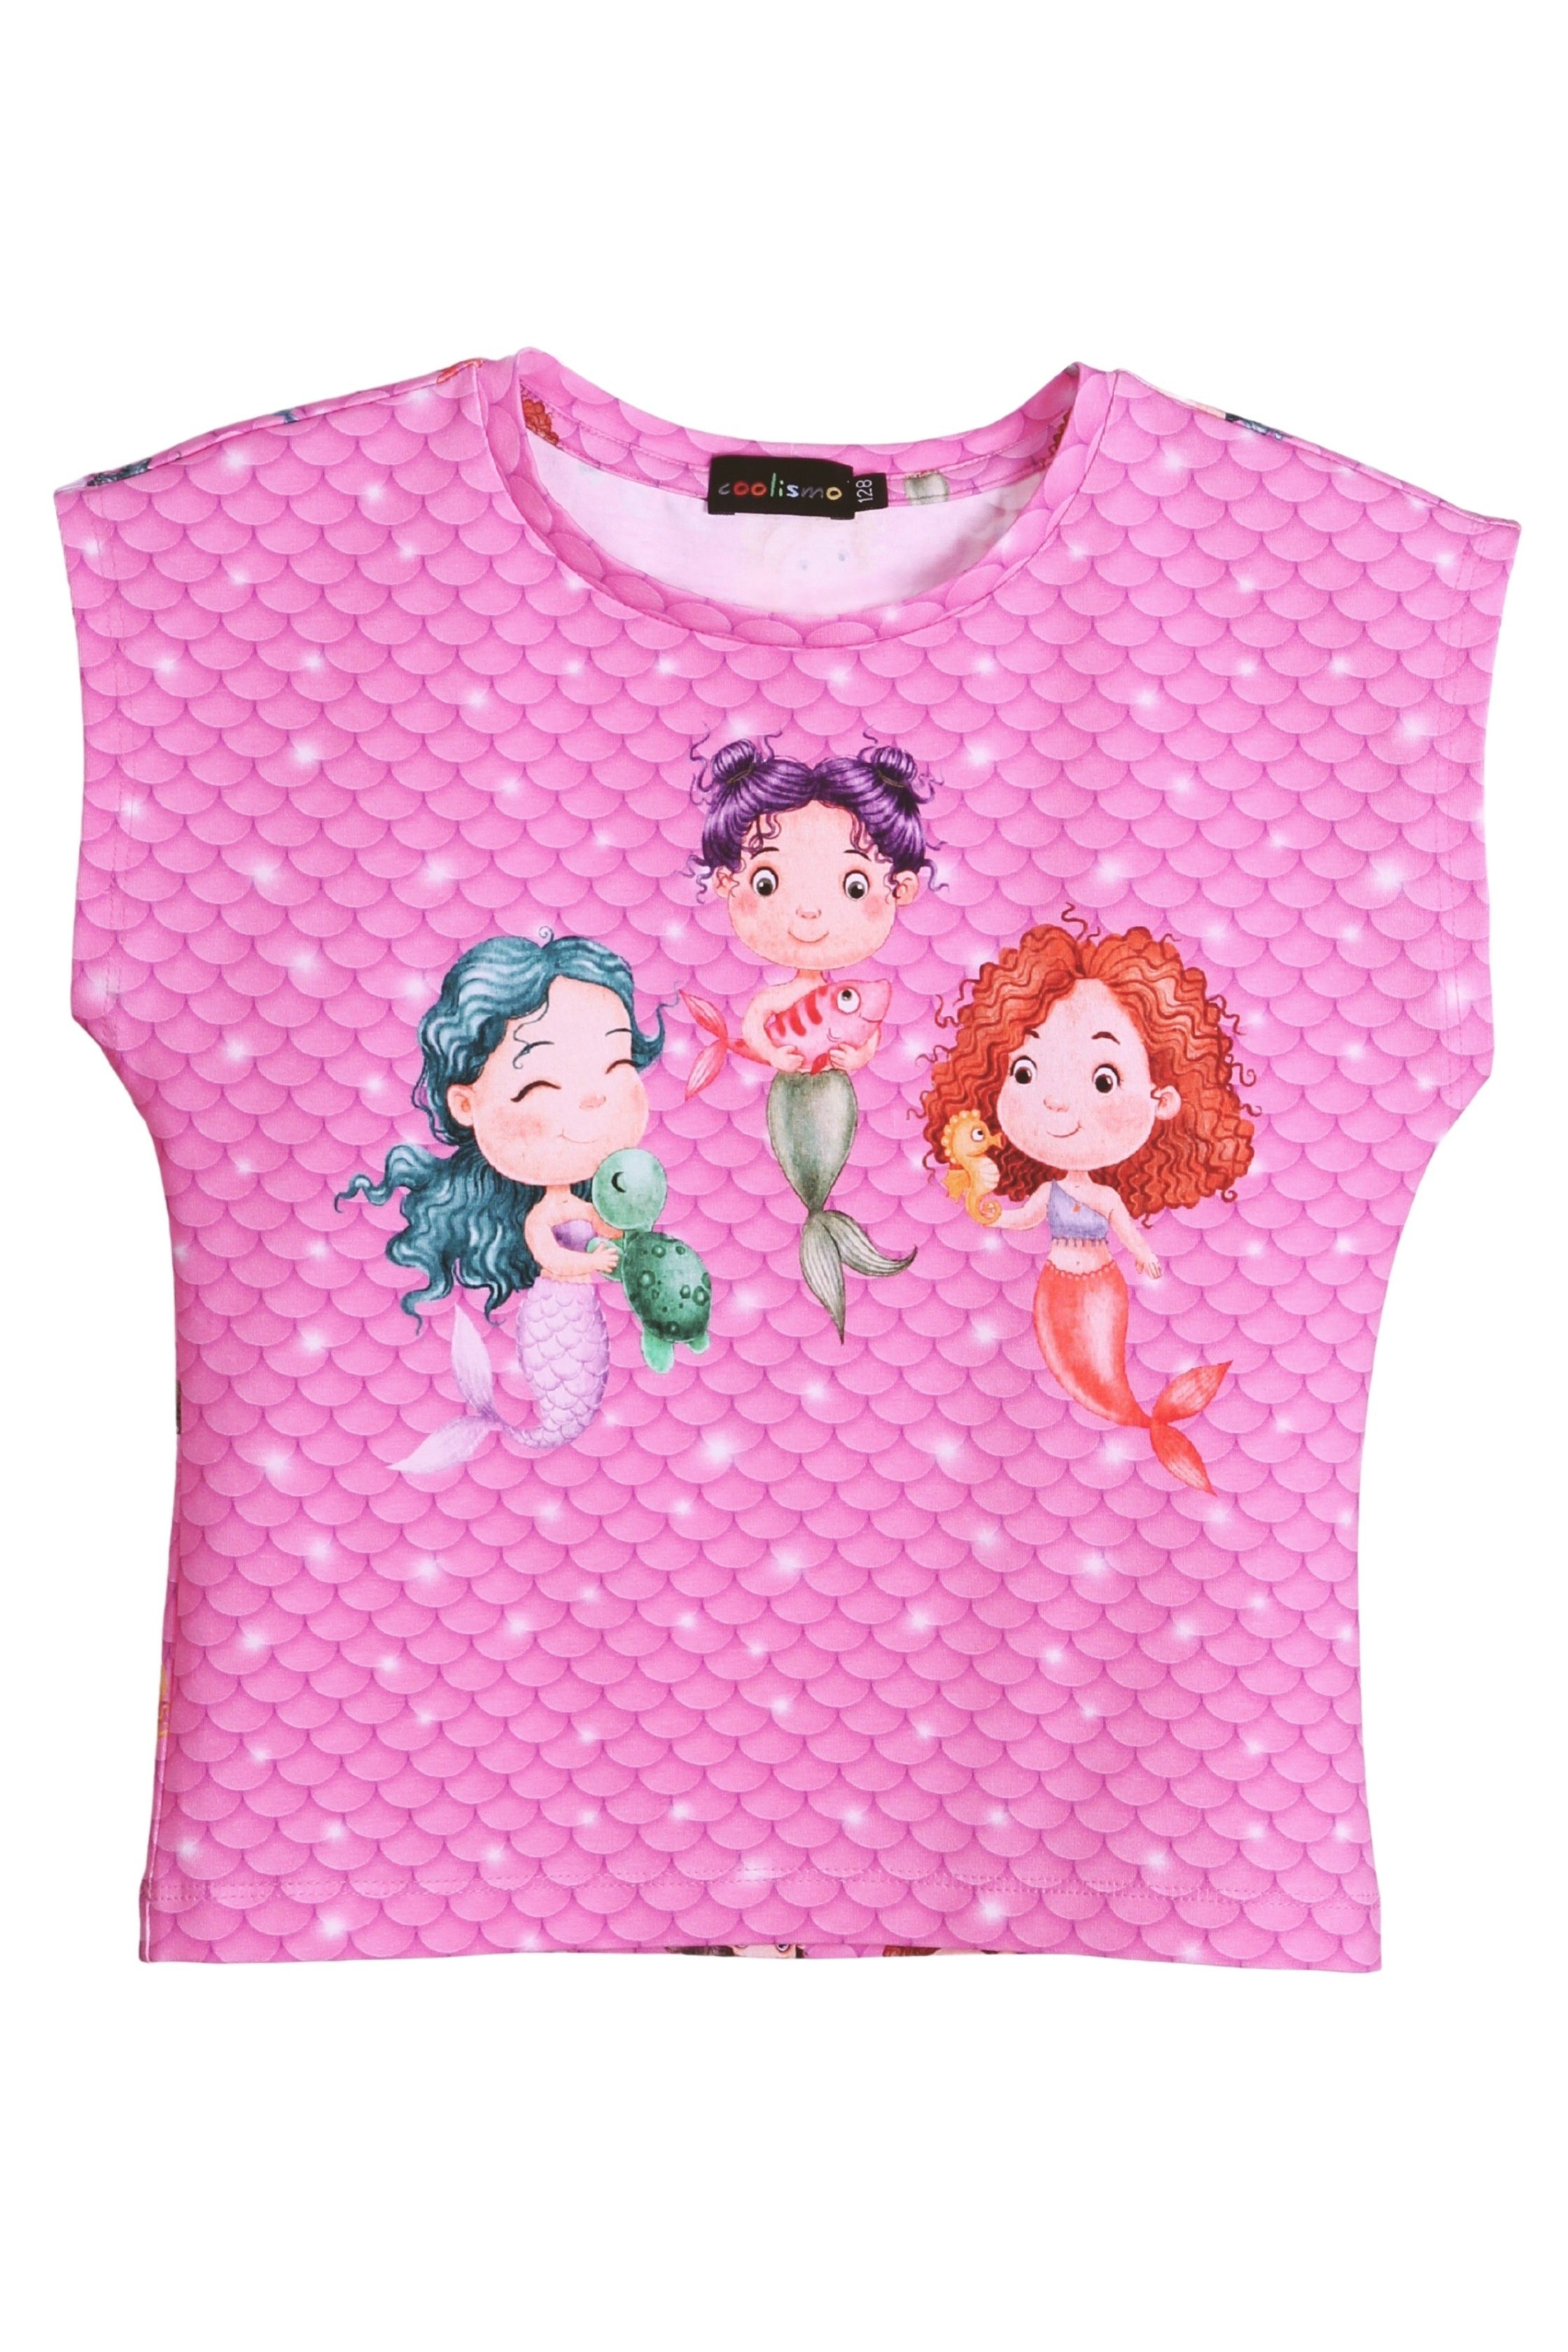 coolismo T-Shirt Print-Shirt für Mädchen Meerjungfrau europäische Baumwolle, Motiv Produktion